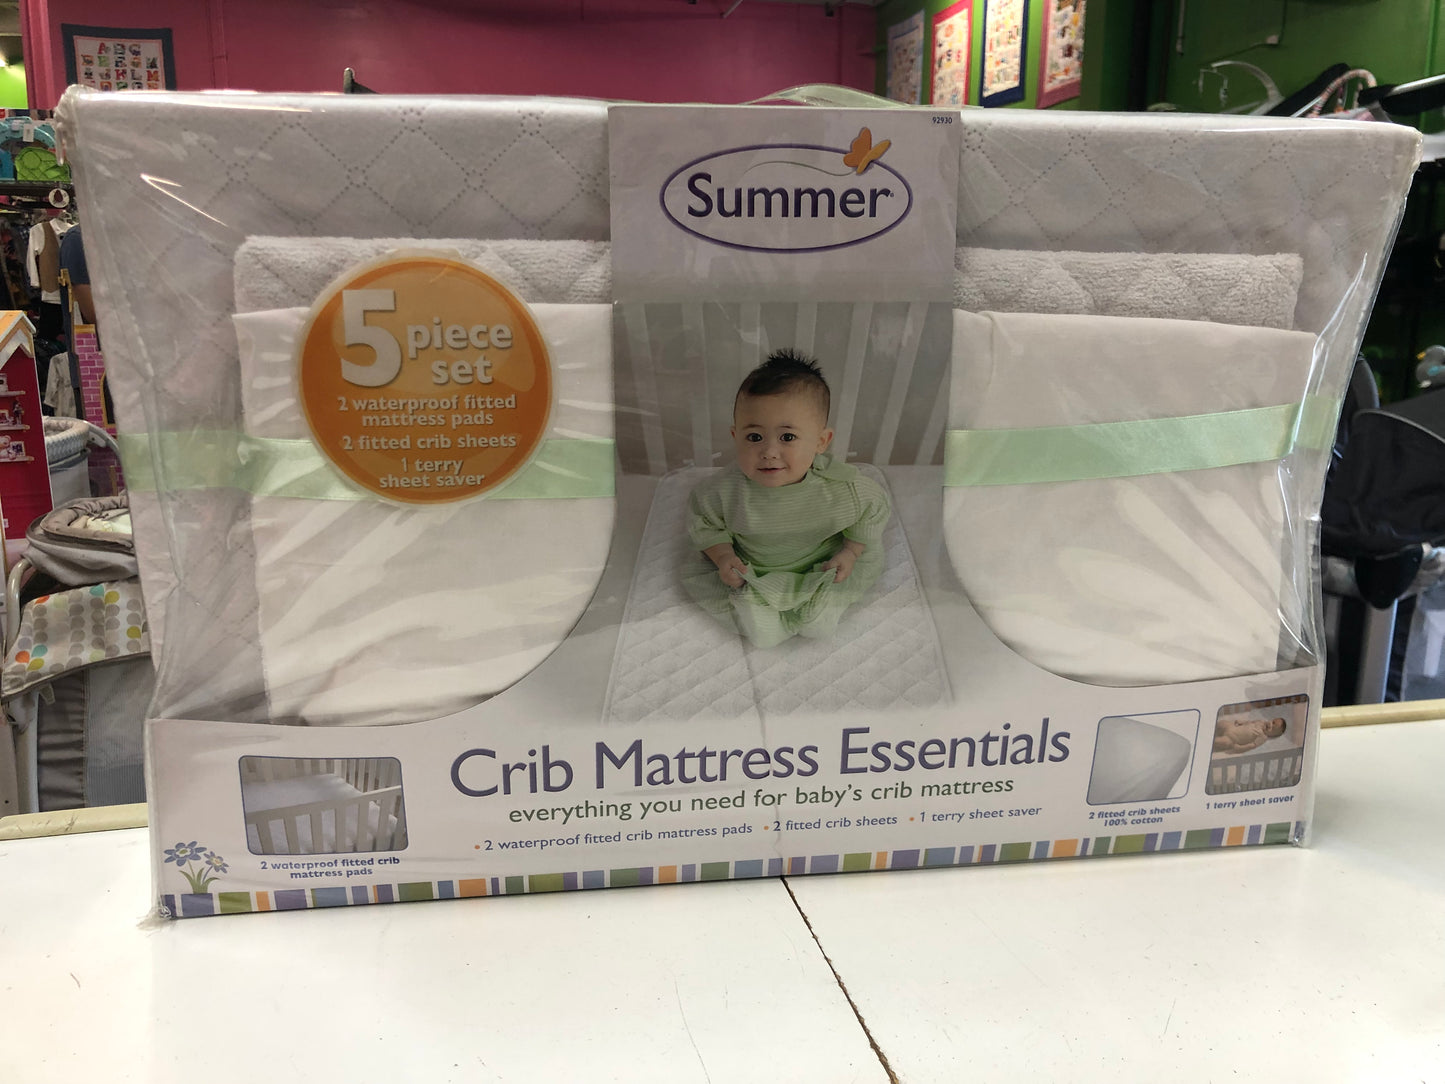 New Summer Crib Mattress Essentials